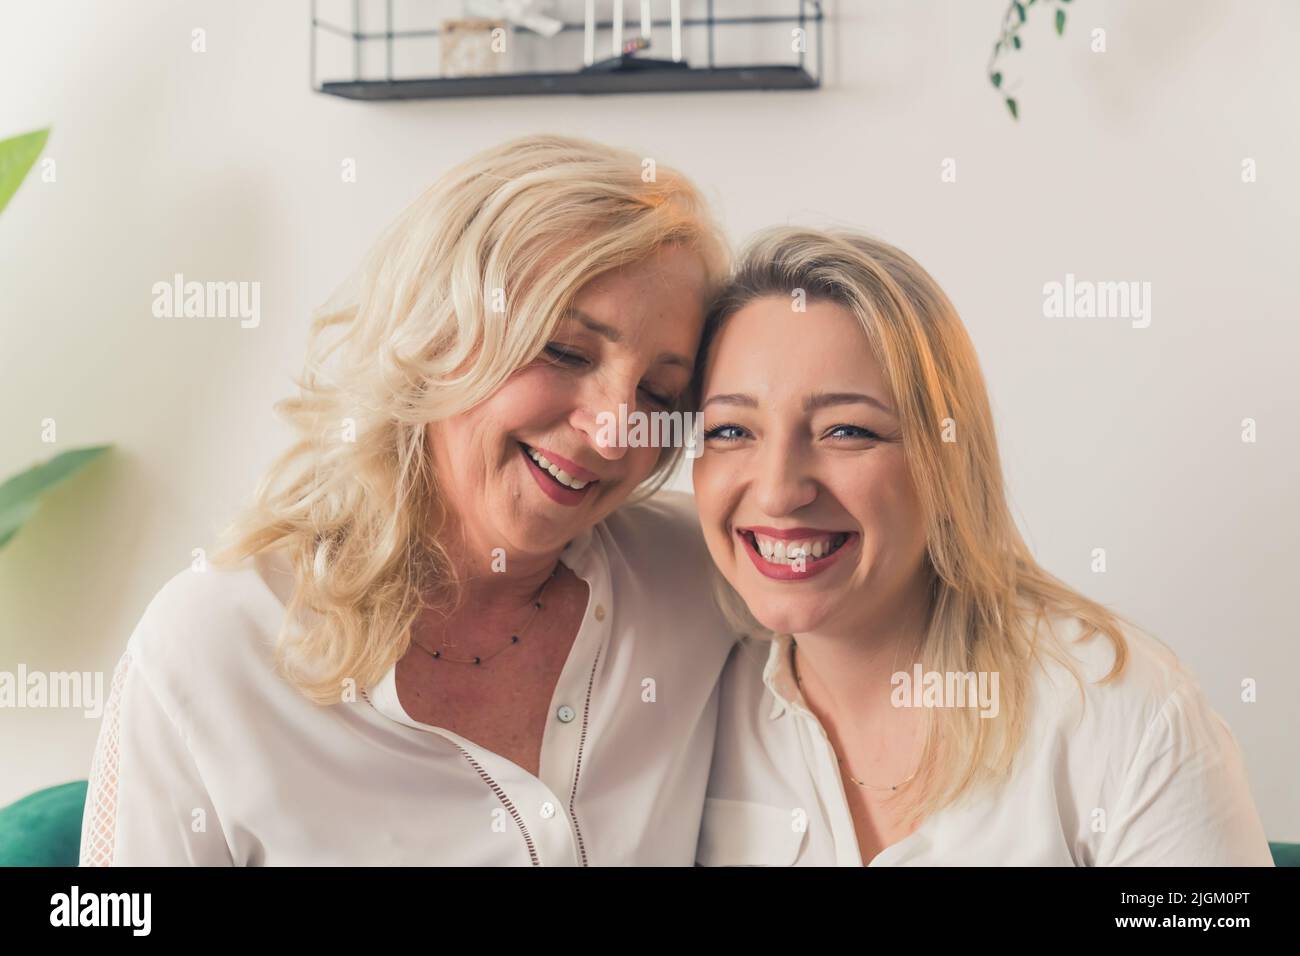 Due donne bionde che guardano allo stesso modo, indossando eleganti camicie bianche, guardando direttamente una macchina fotografica. Femmine che si guardano l'un l'altro con amore e allegria. Foto di alta qualità Foto Stock